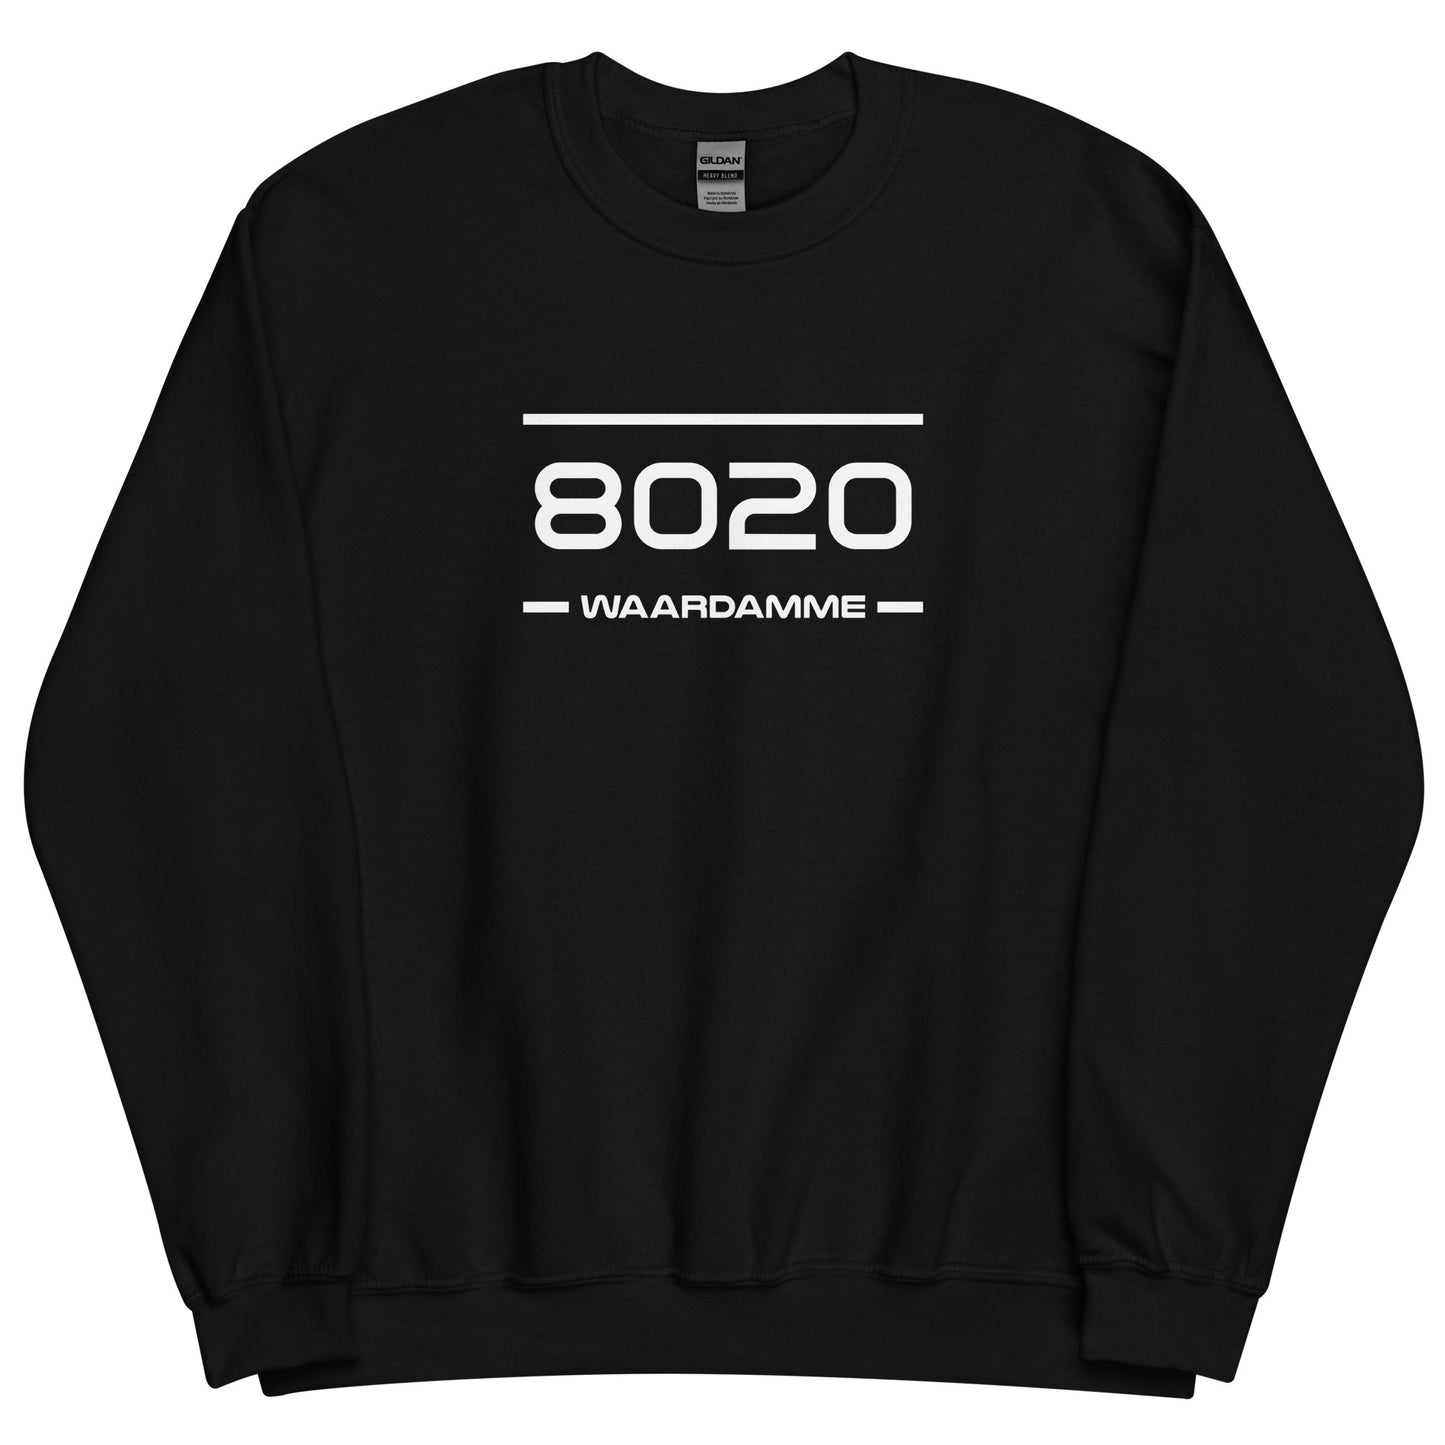 Sweater - 8020 - Waardamme (M/V)